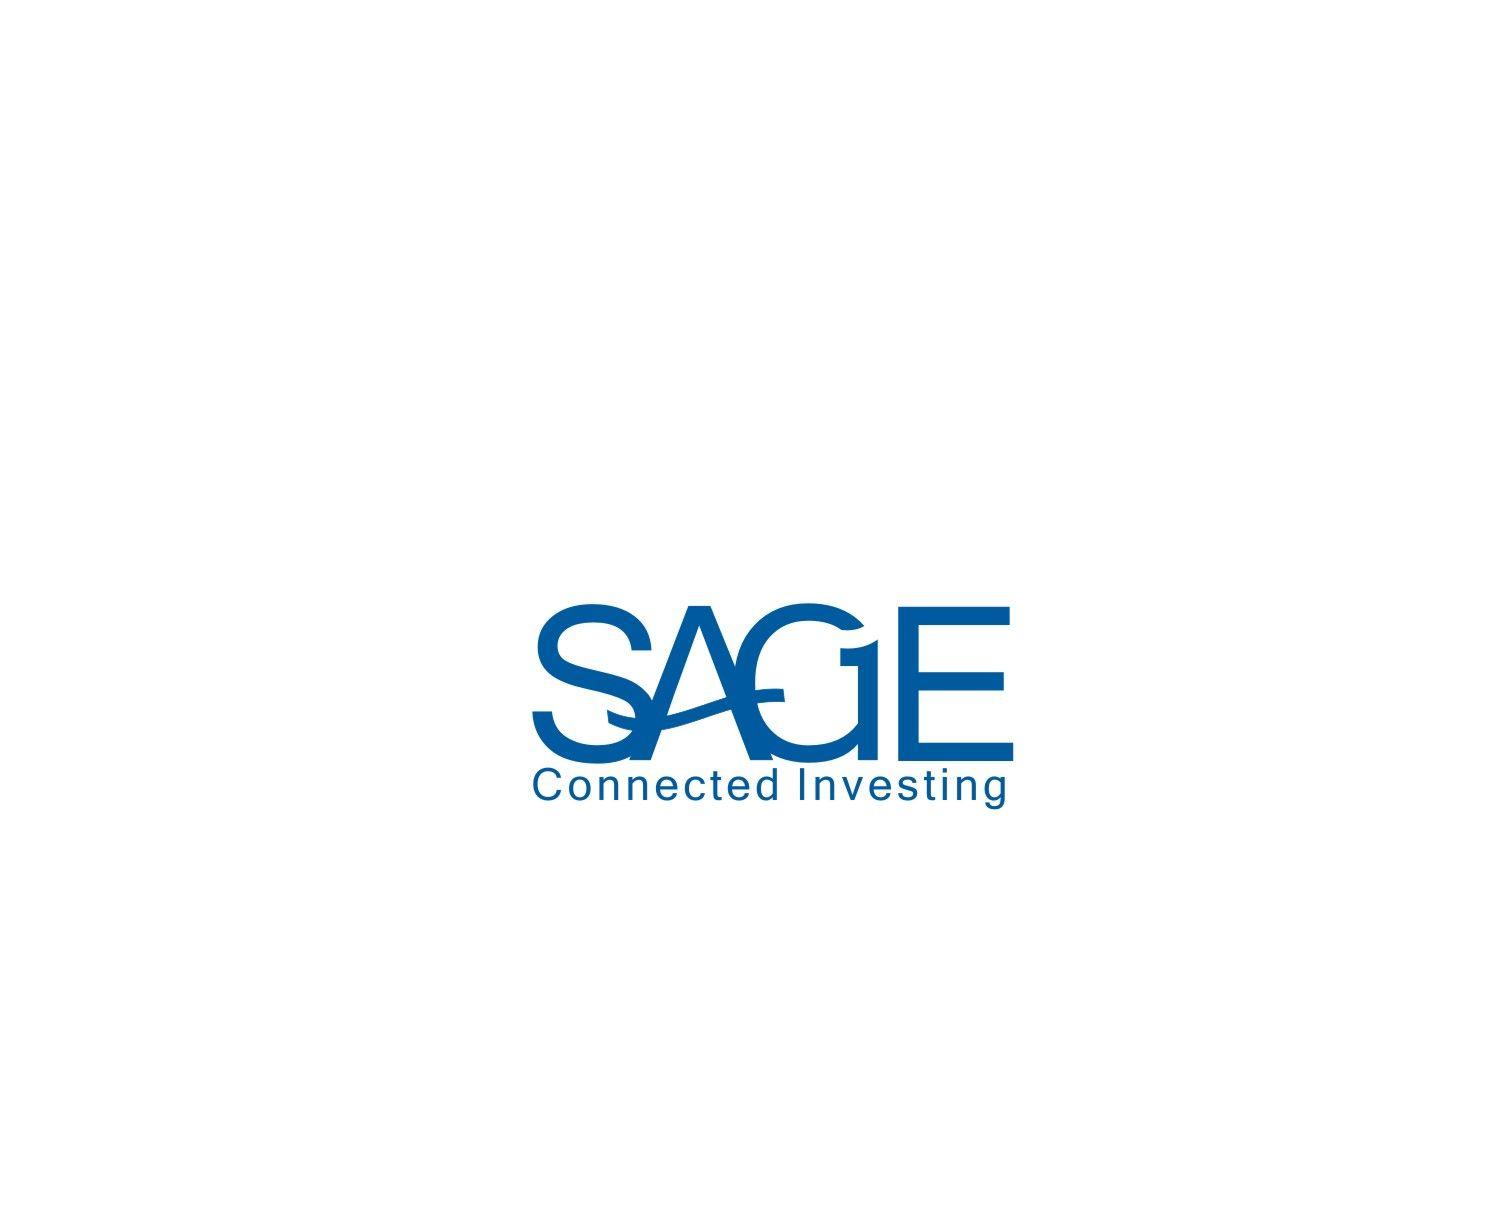 Sage Logo - Professional, Upmarket Logo Design for SAGE Connected Investing